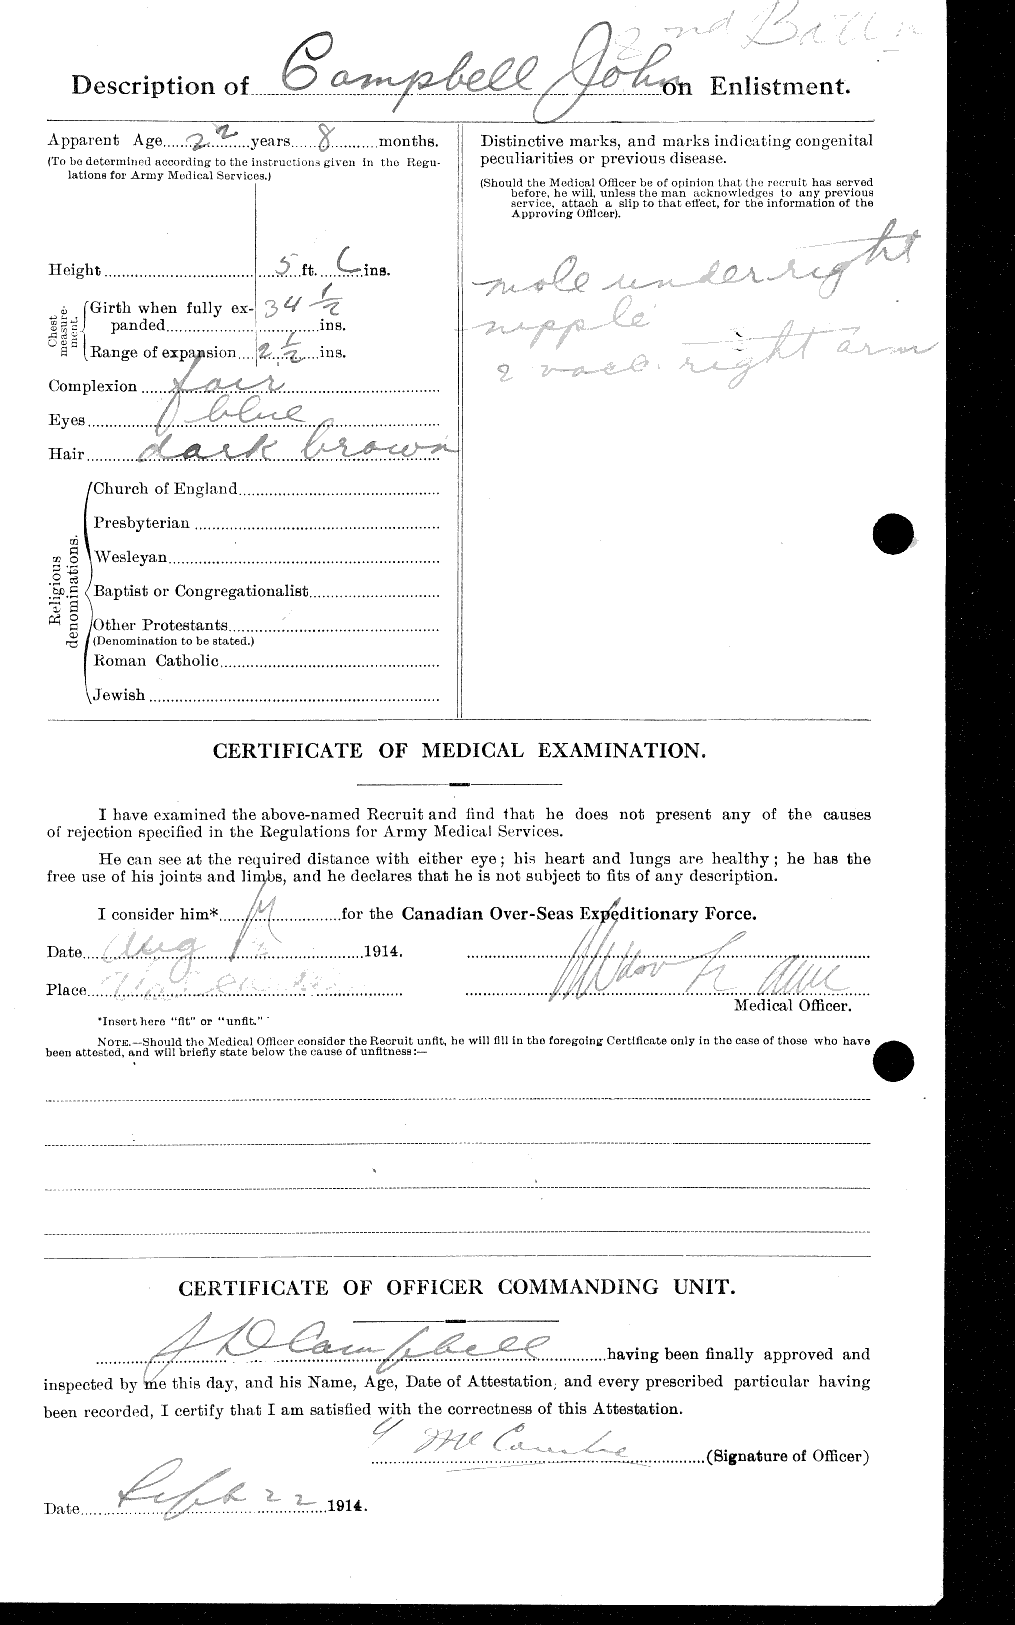 Dossiers du Personnel de la Première Guerre mondiale - CEC 008504b